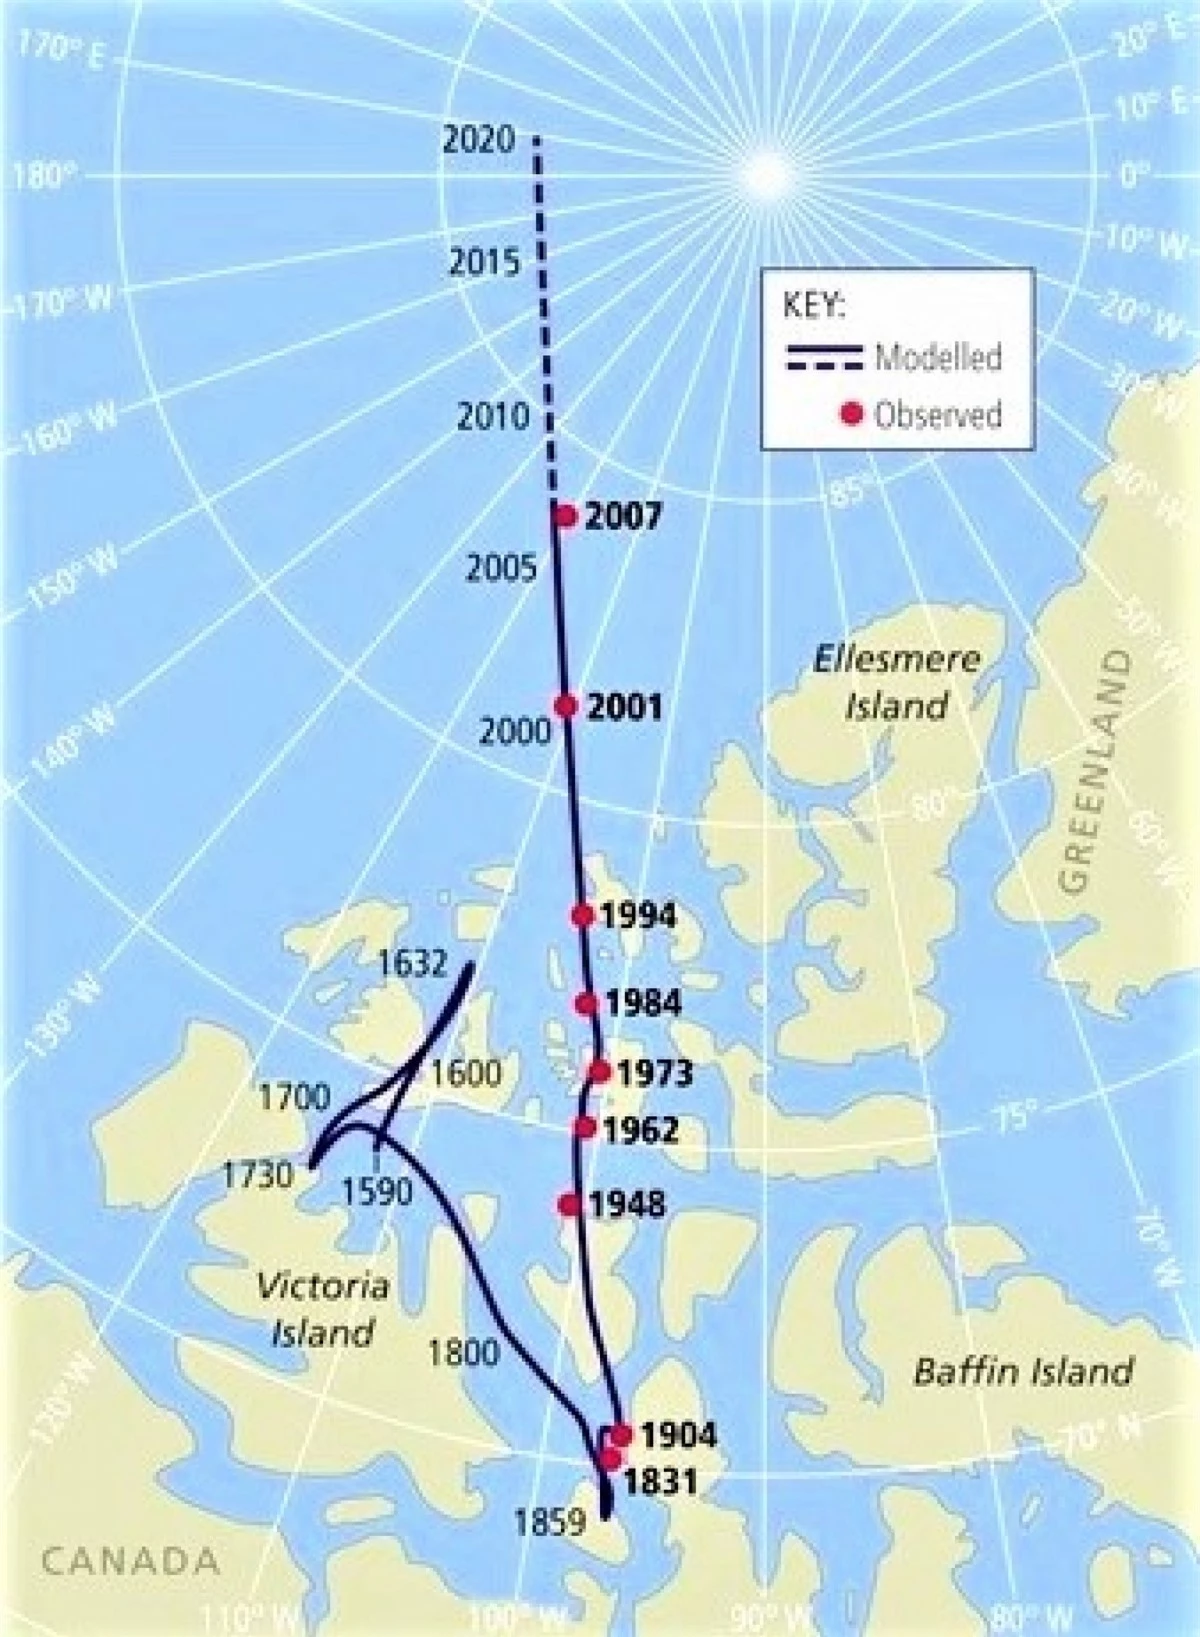 Kể từ những năm 1900, Cực Bắc từ đã dịch chuyển về phía Bắc; Nguồn: oceannavigator.com.